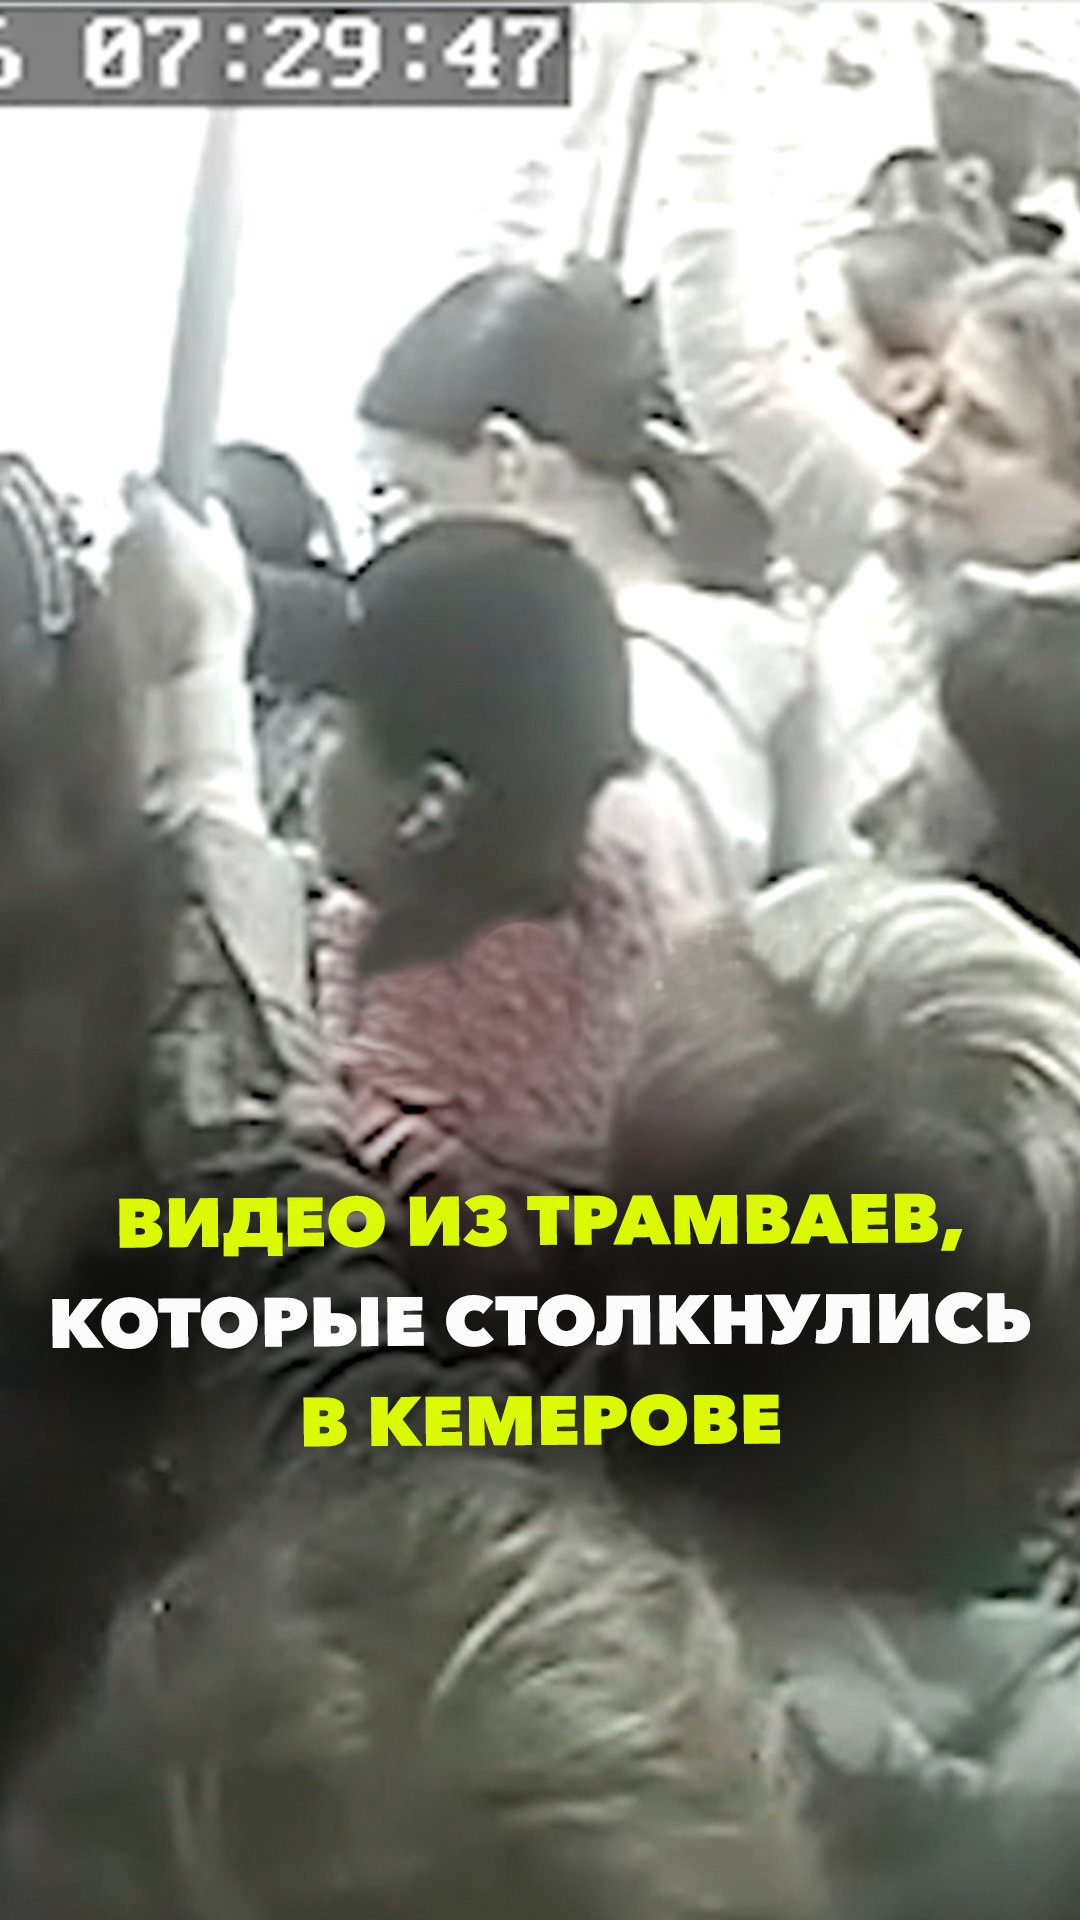 Видео из салонов трамваев, которые столкнулись в Кемерове